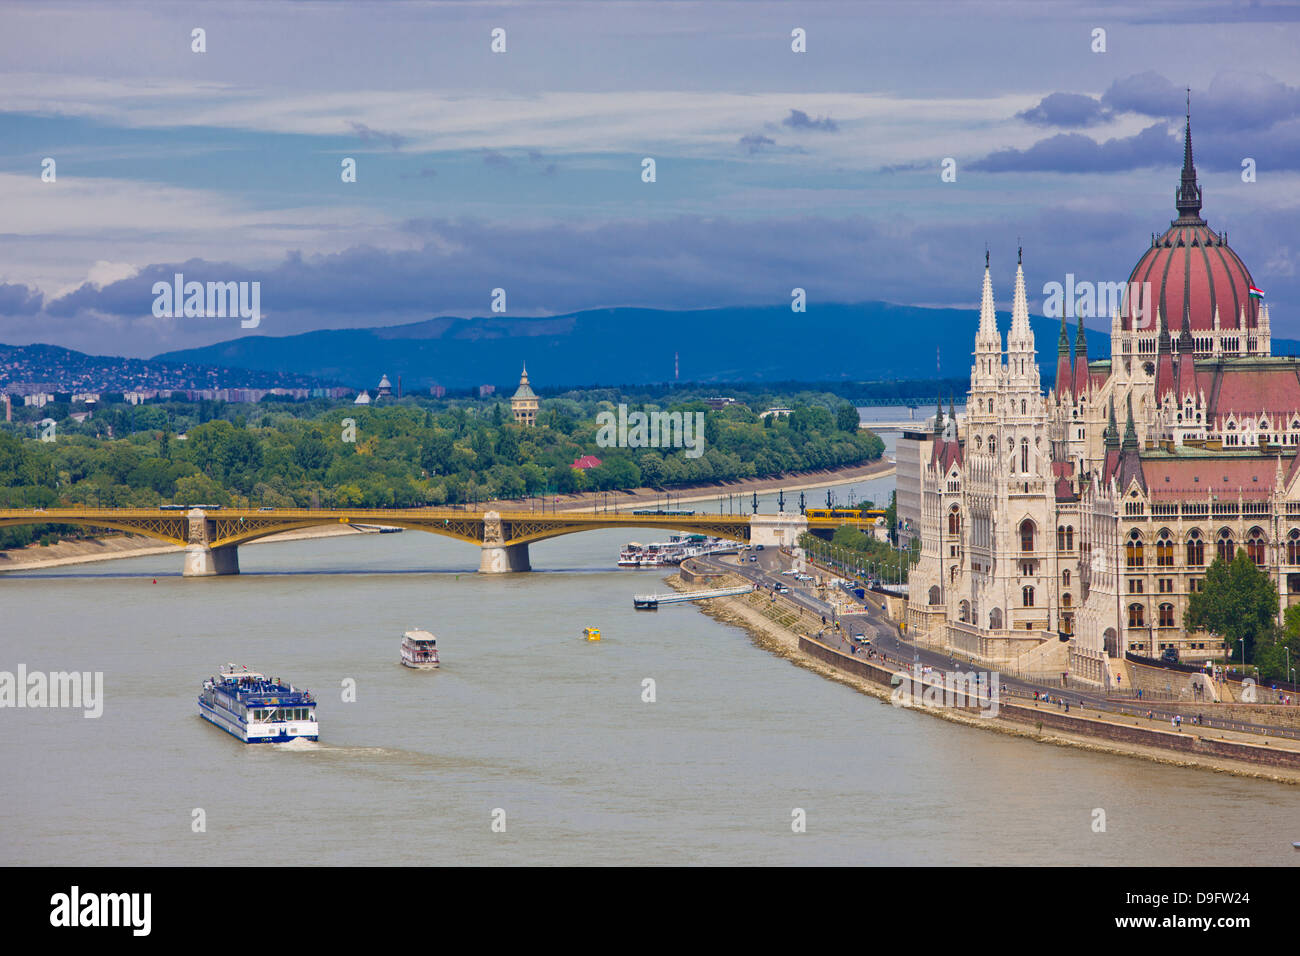 El Parlamento cerca del río Danubio, Budapest, Hungría Foto de stock